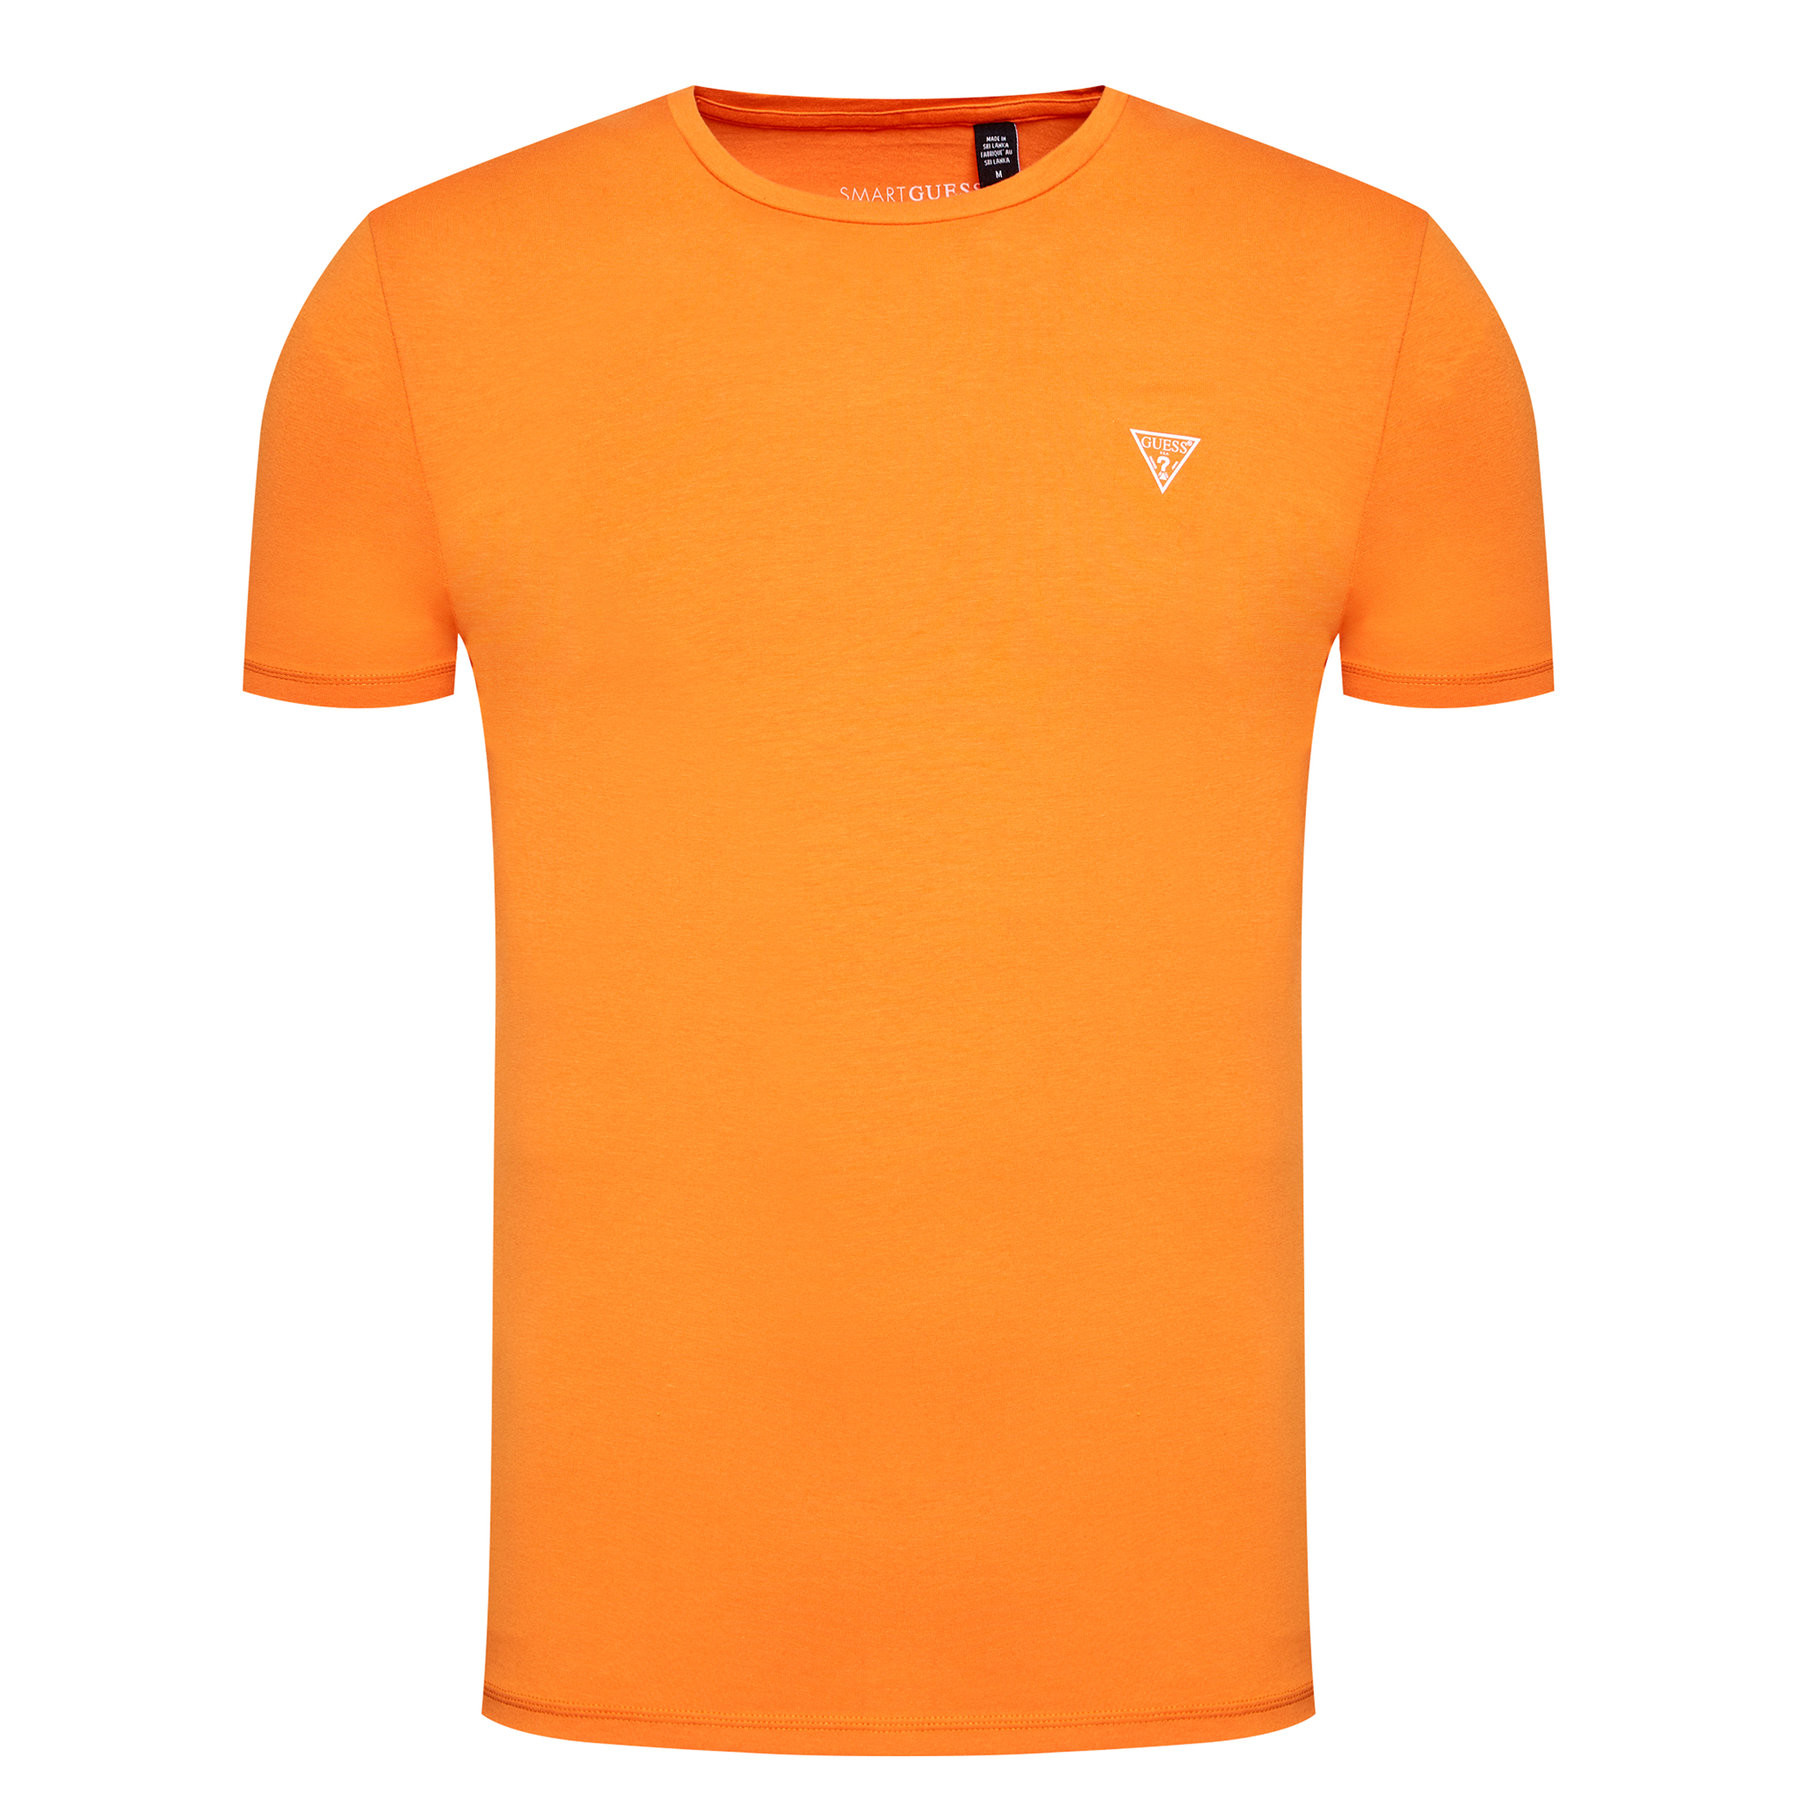 Pánské tričko U94M09K6YW1 - G3G4 oranžová - Guess oranžová L